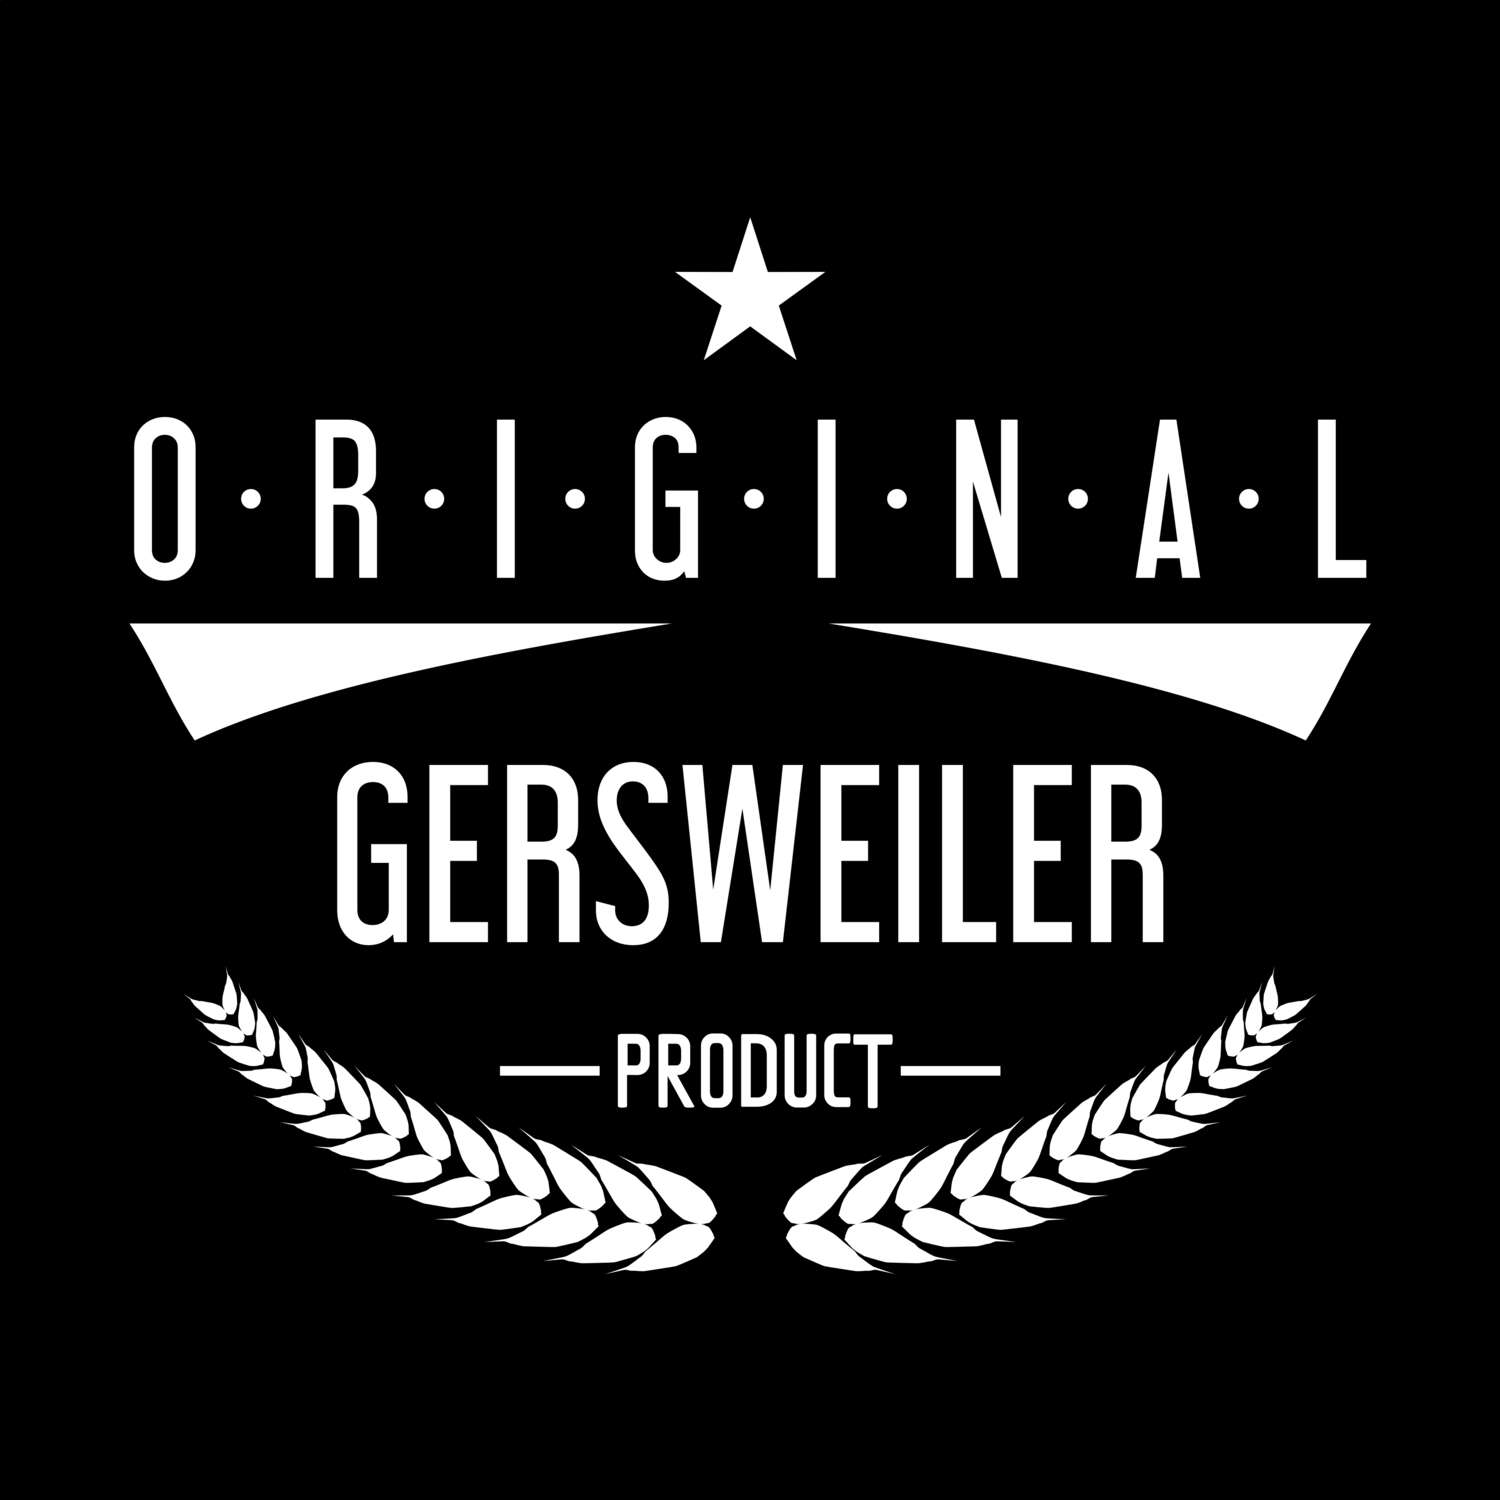 Gersweiler T-Shirt »Original Product«